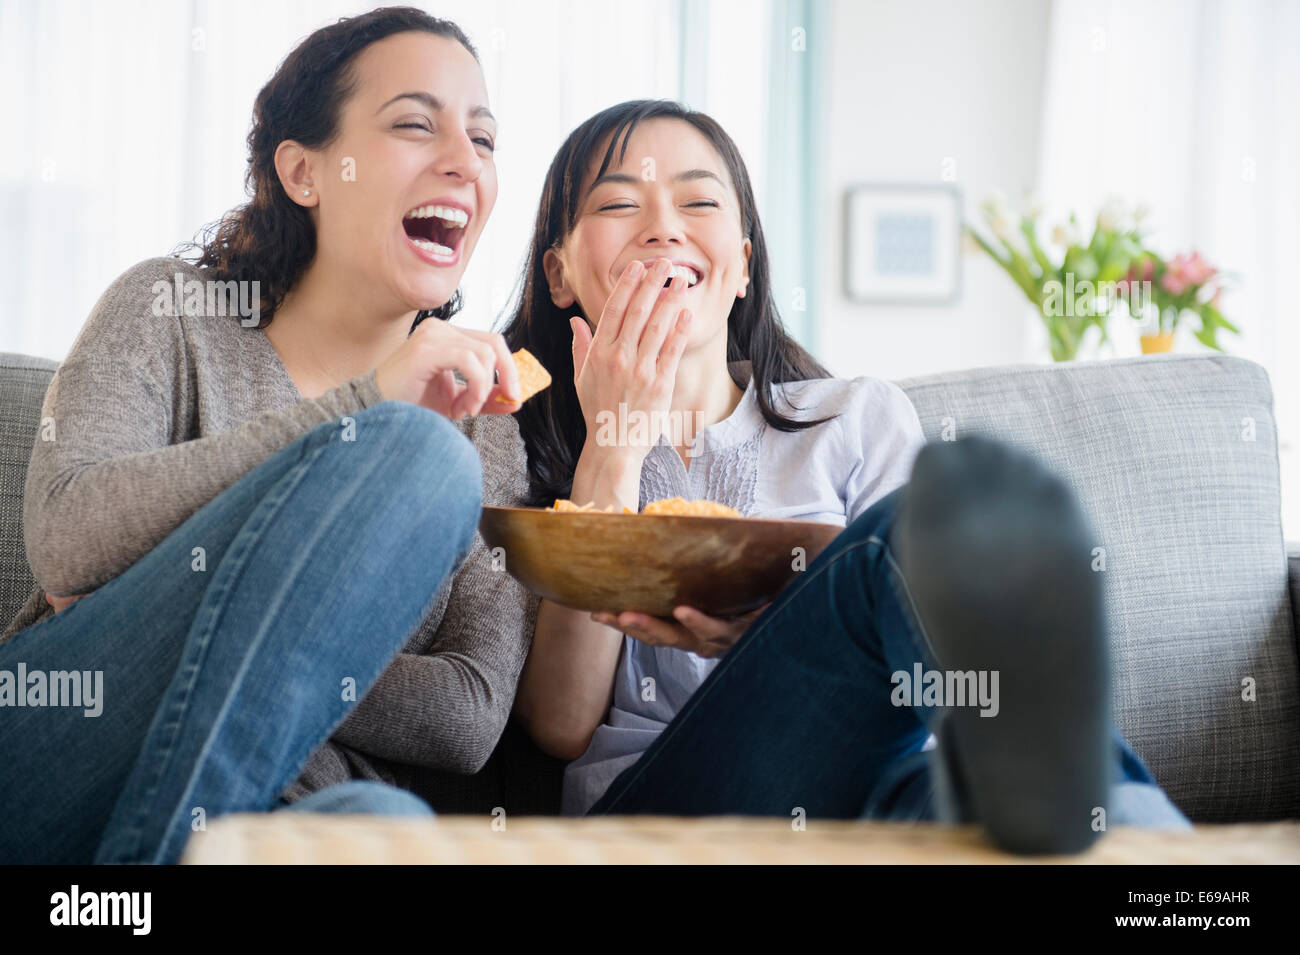 Las mujeres riendo juntos en el sofá Foto de stock